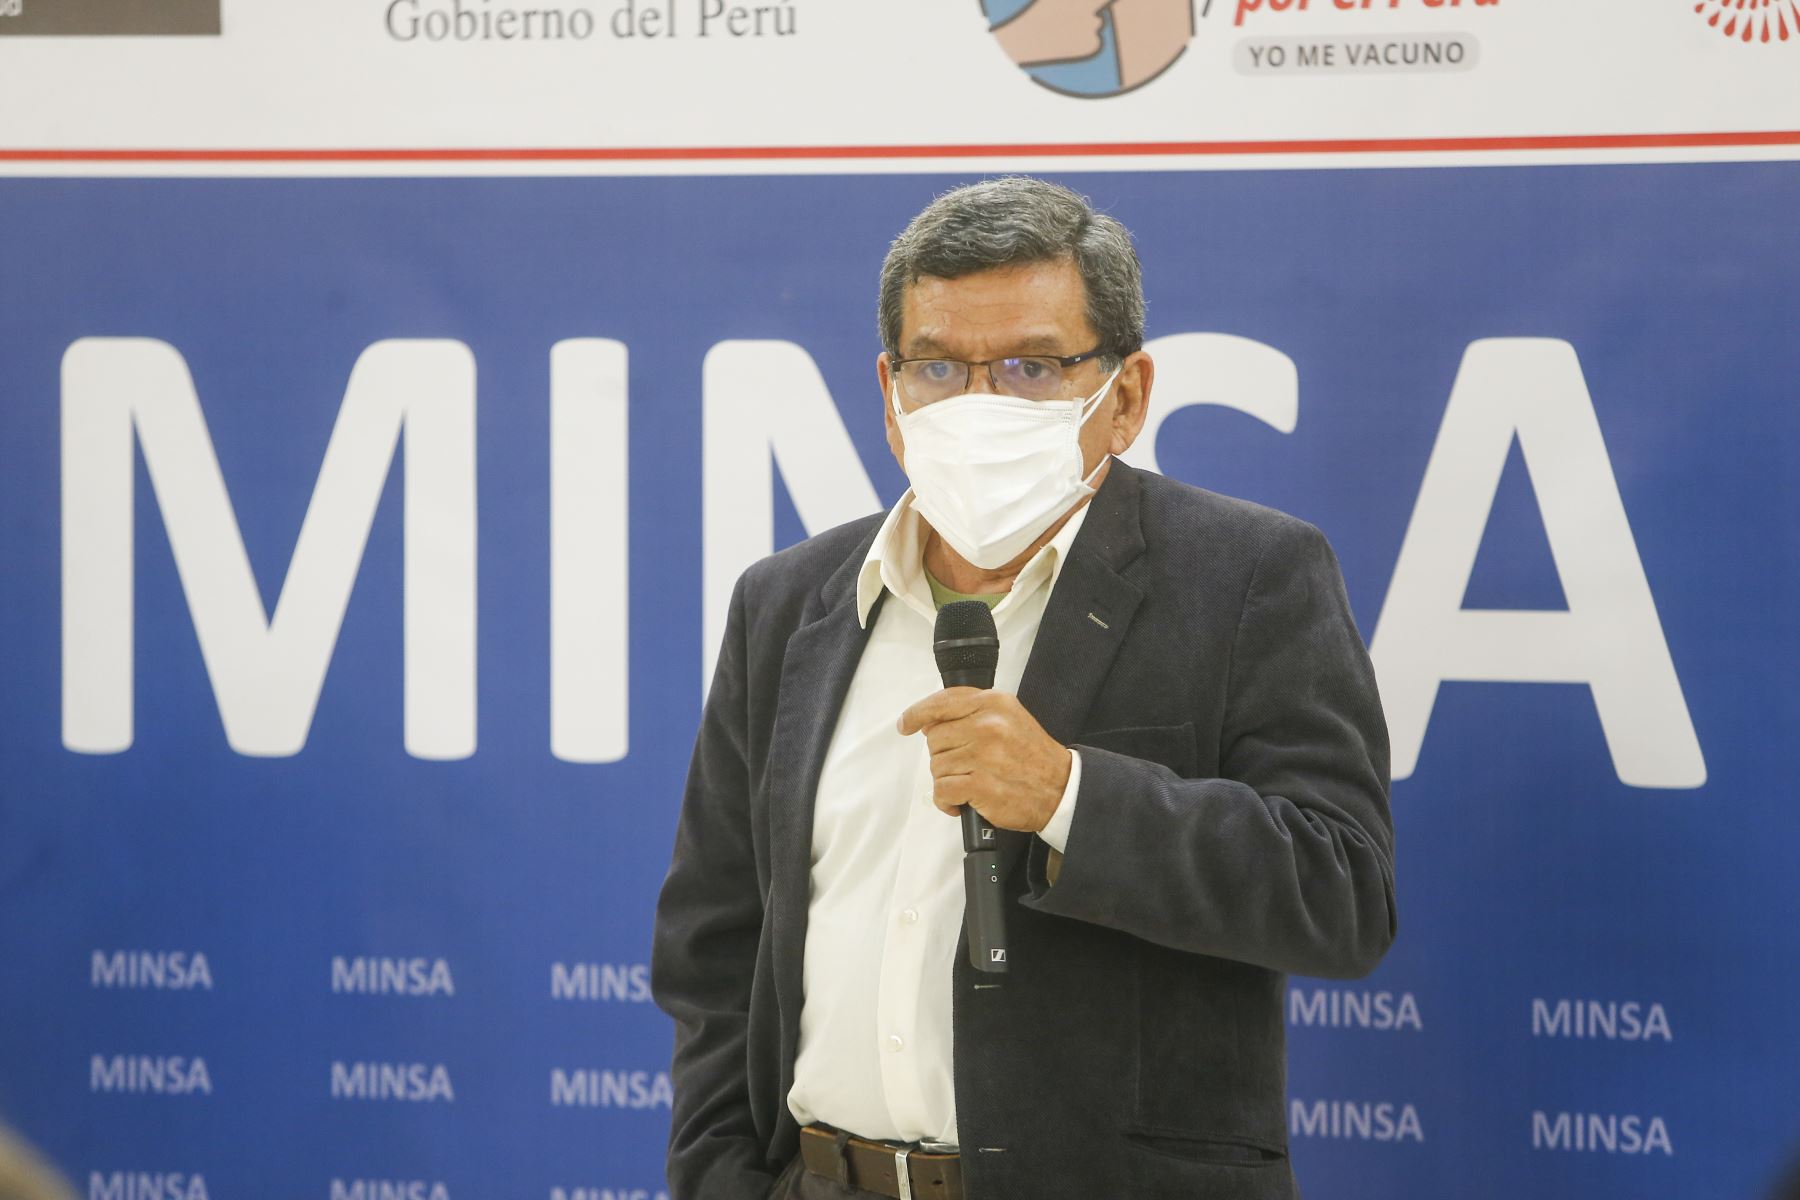 Ministro Cevallos enfatiza que línea del Gobierno es dialogante y busca consensos | Noticias | Agencia Peruana de Noticias Andina